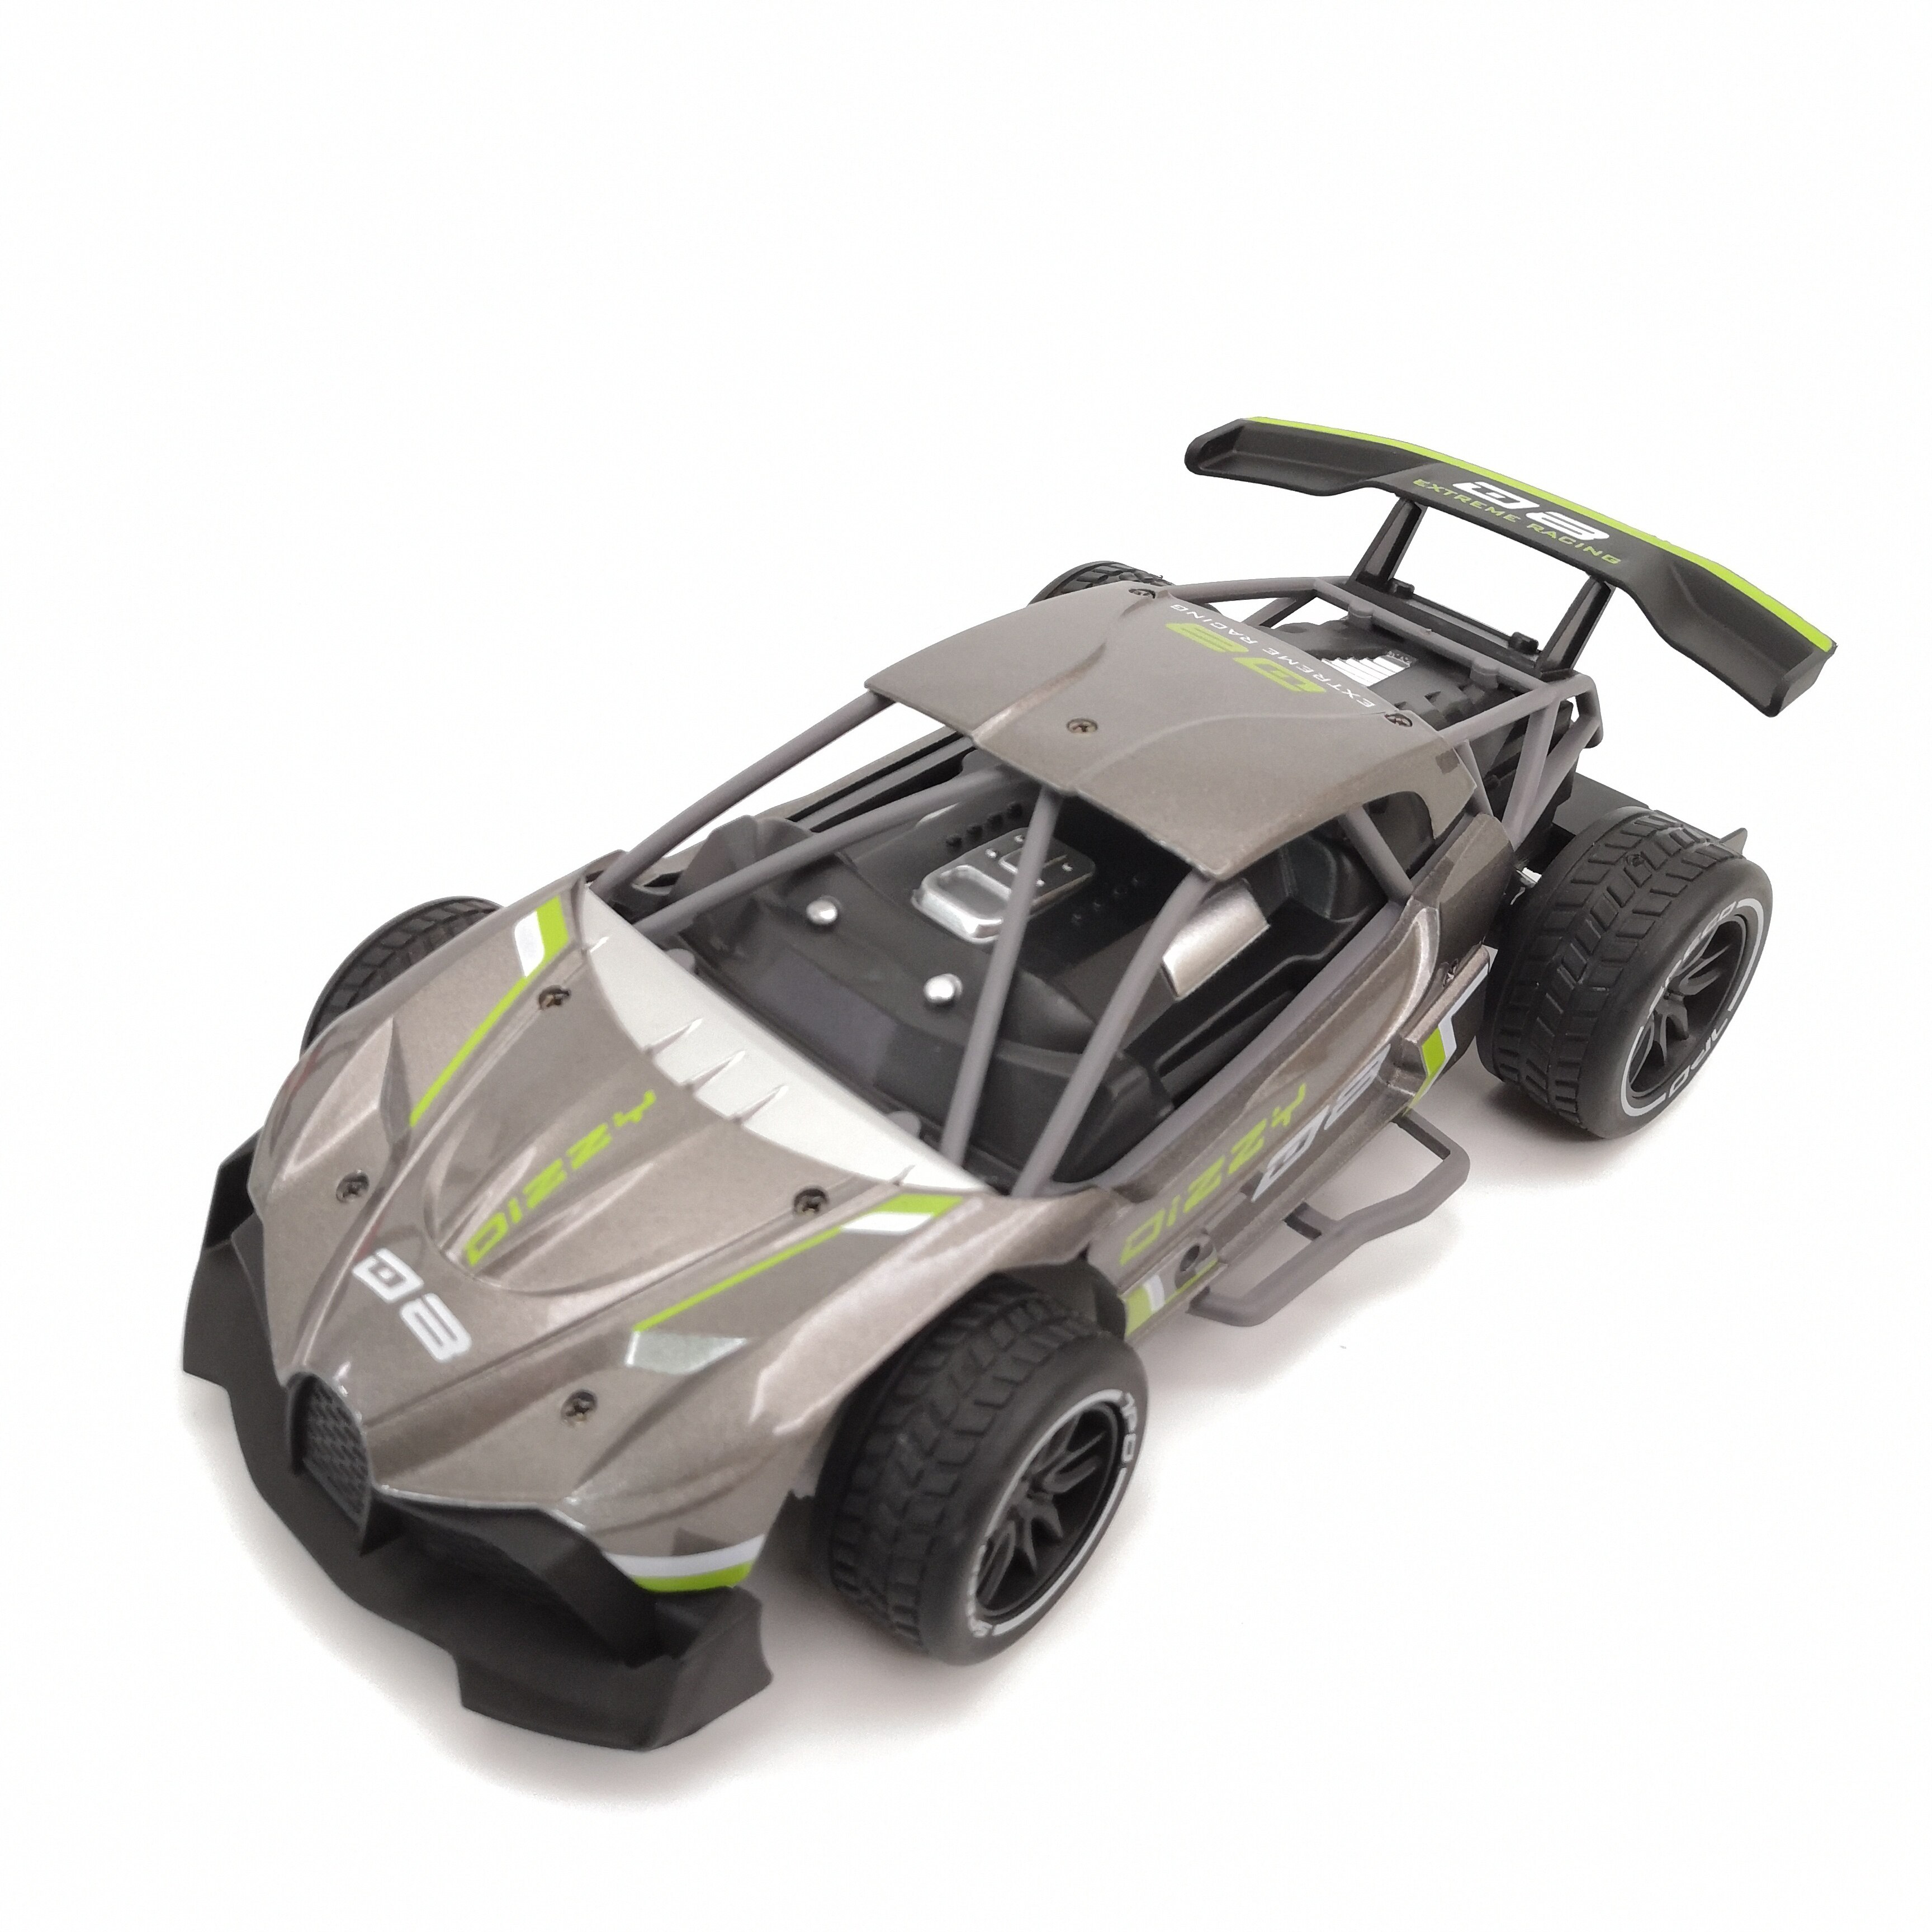 Aolly Rc Auto Metalen Afstandsbediening Drift Racing Voertuig Off Road Auto Hoge Snelheid Auto Speelgoed Voor Kids Max 15 km/h